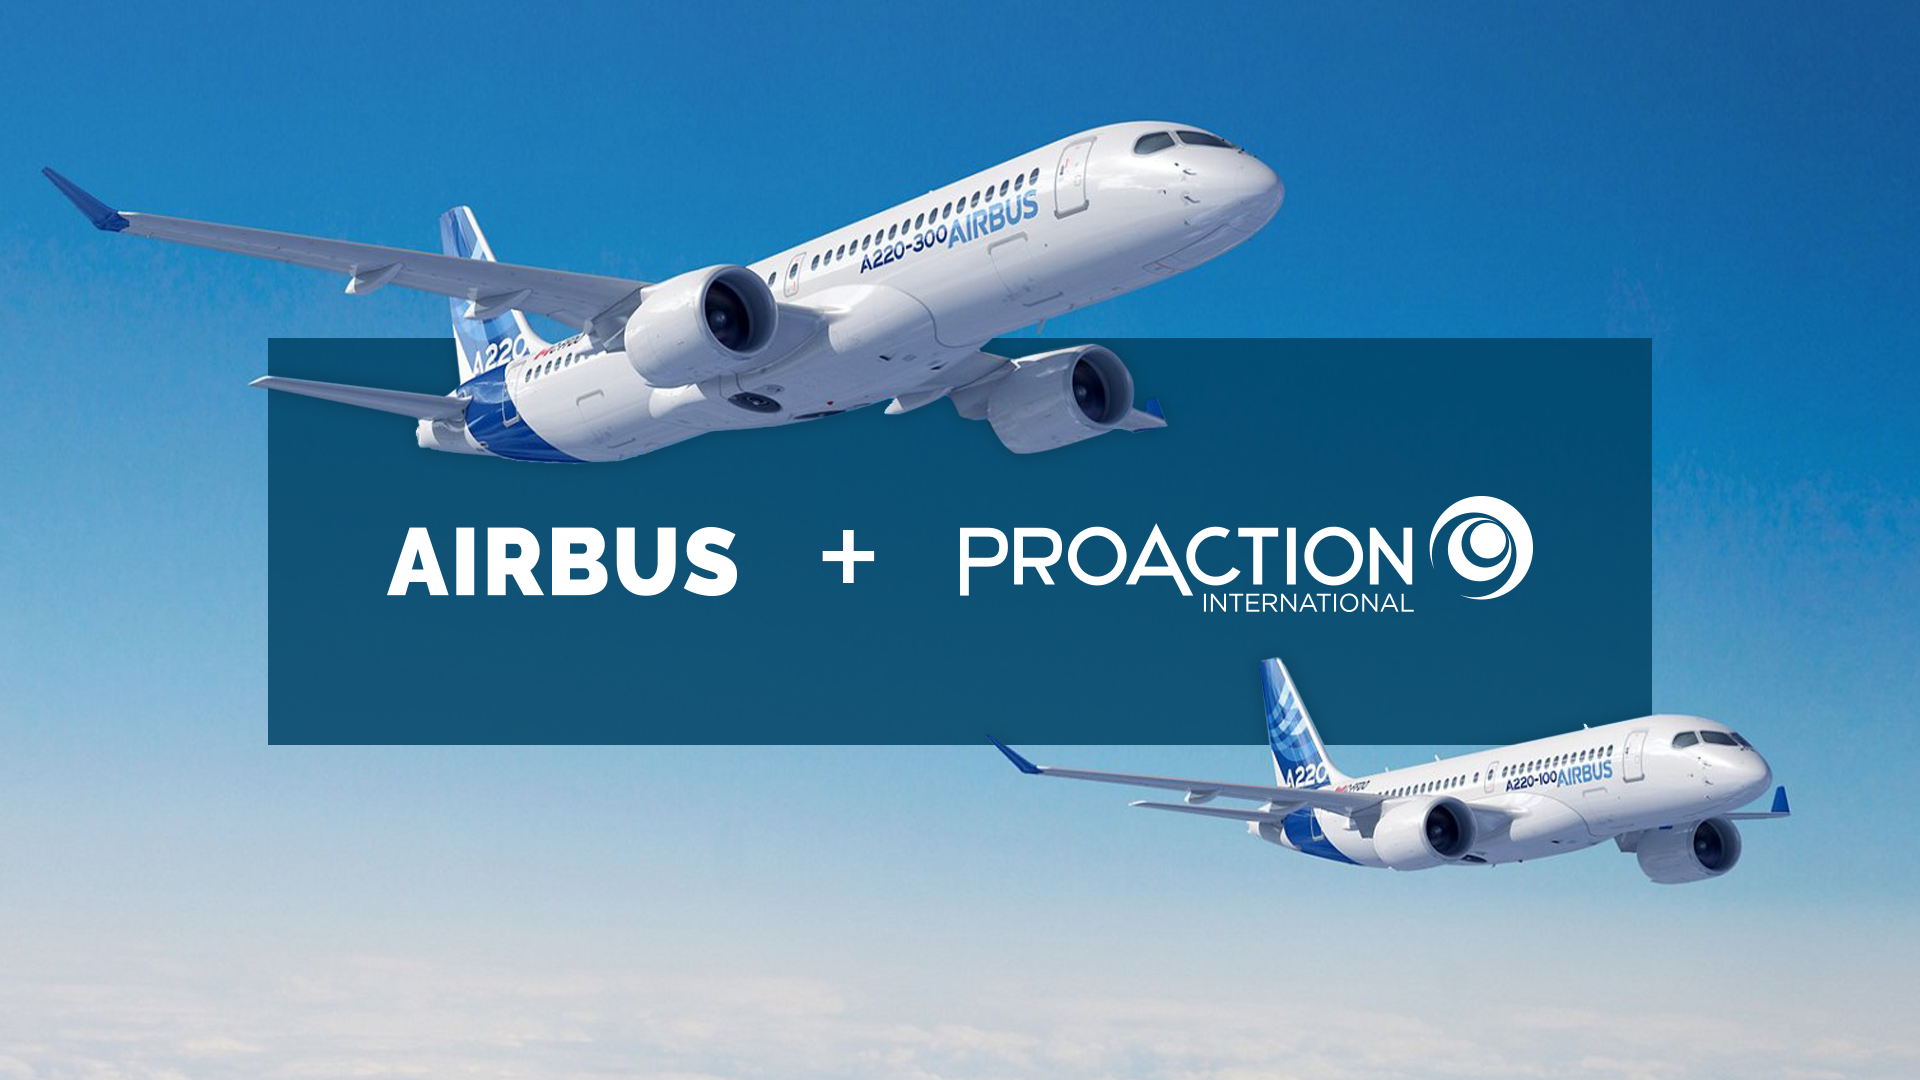 AIRBUS transforme sa culture managériale et propulse la performance de son usine de Mirabel avec Proaction International